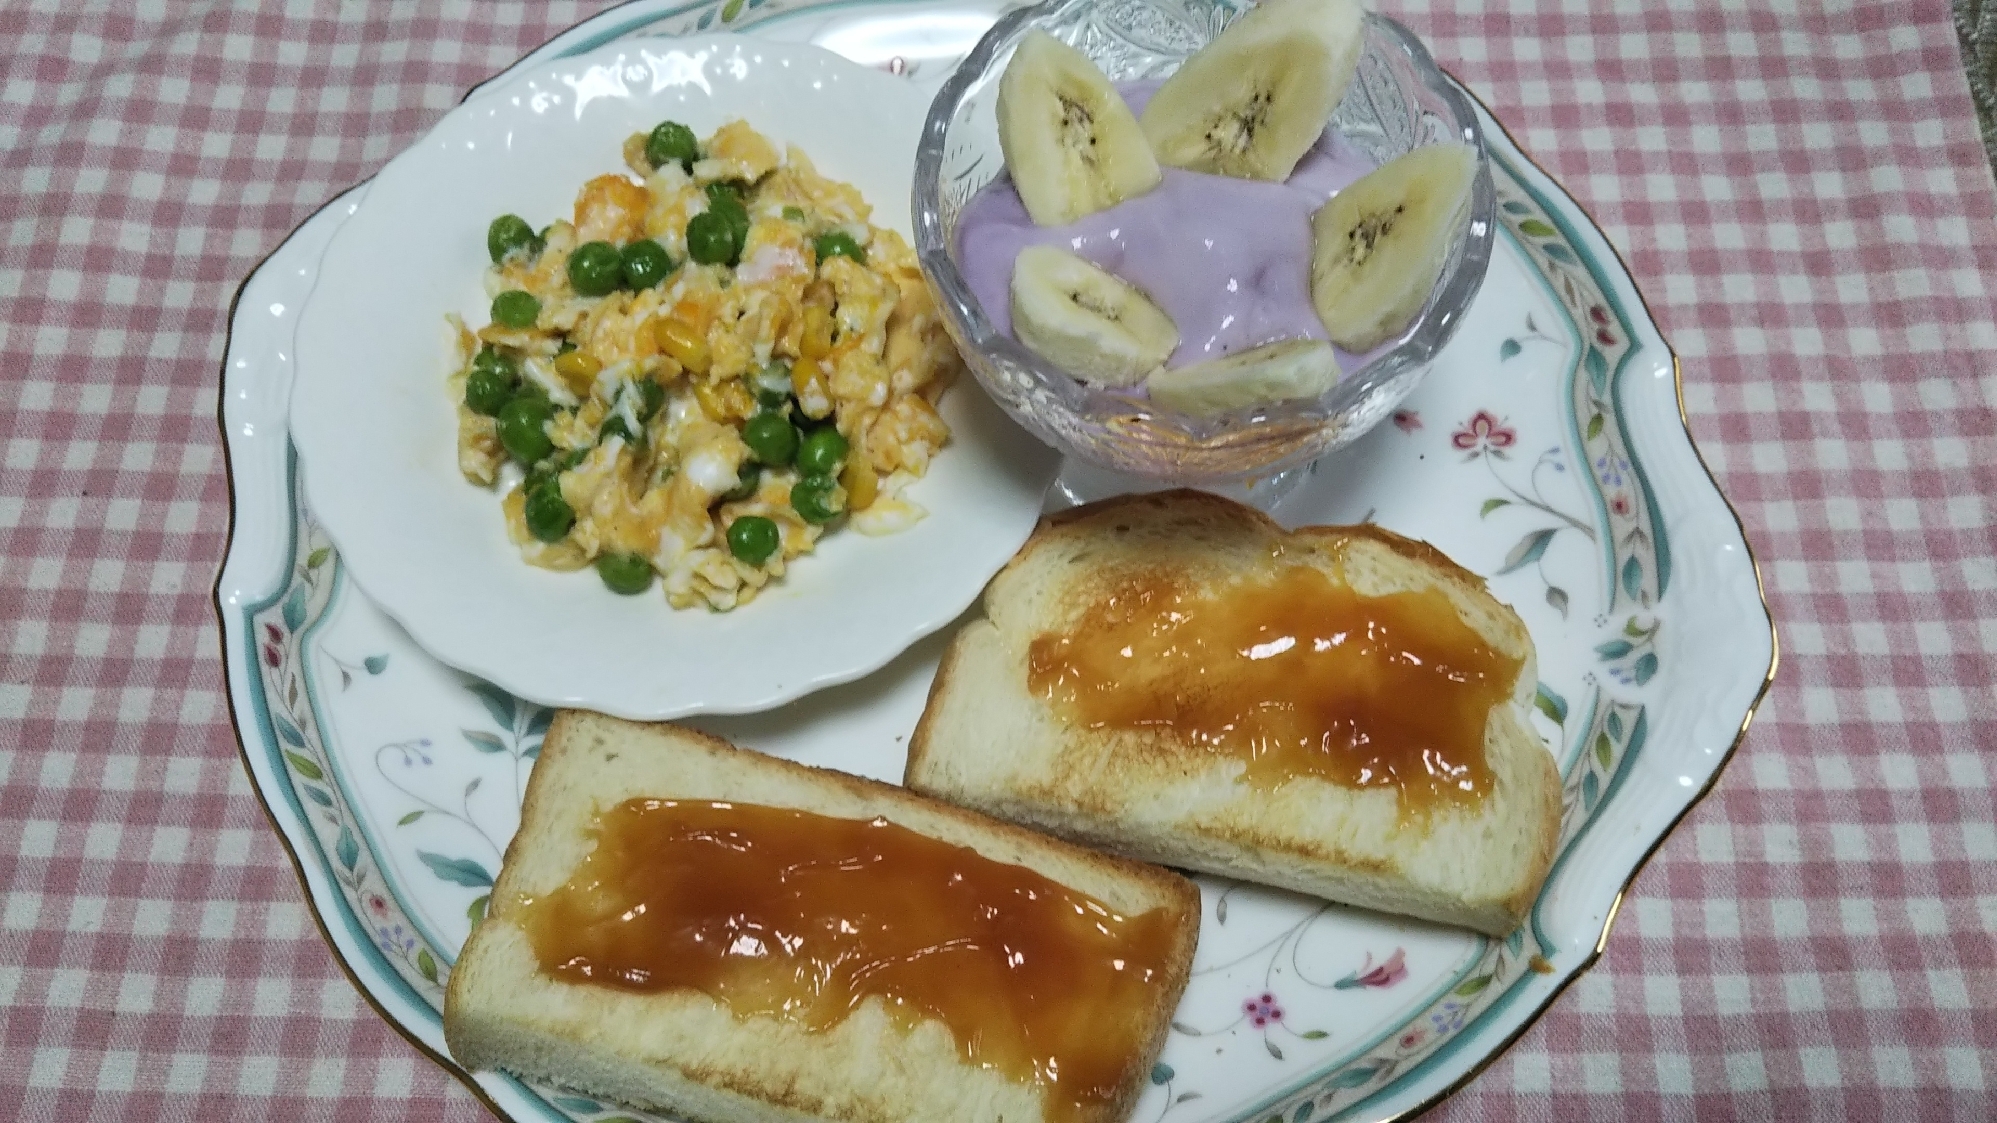 グリーンピース炒り卵とバナナヨーグルトとトースト☆